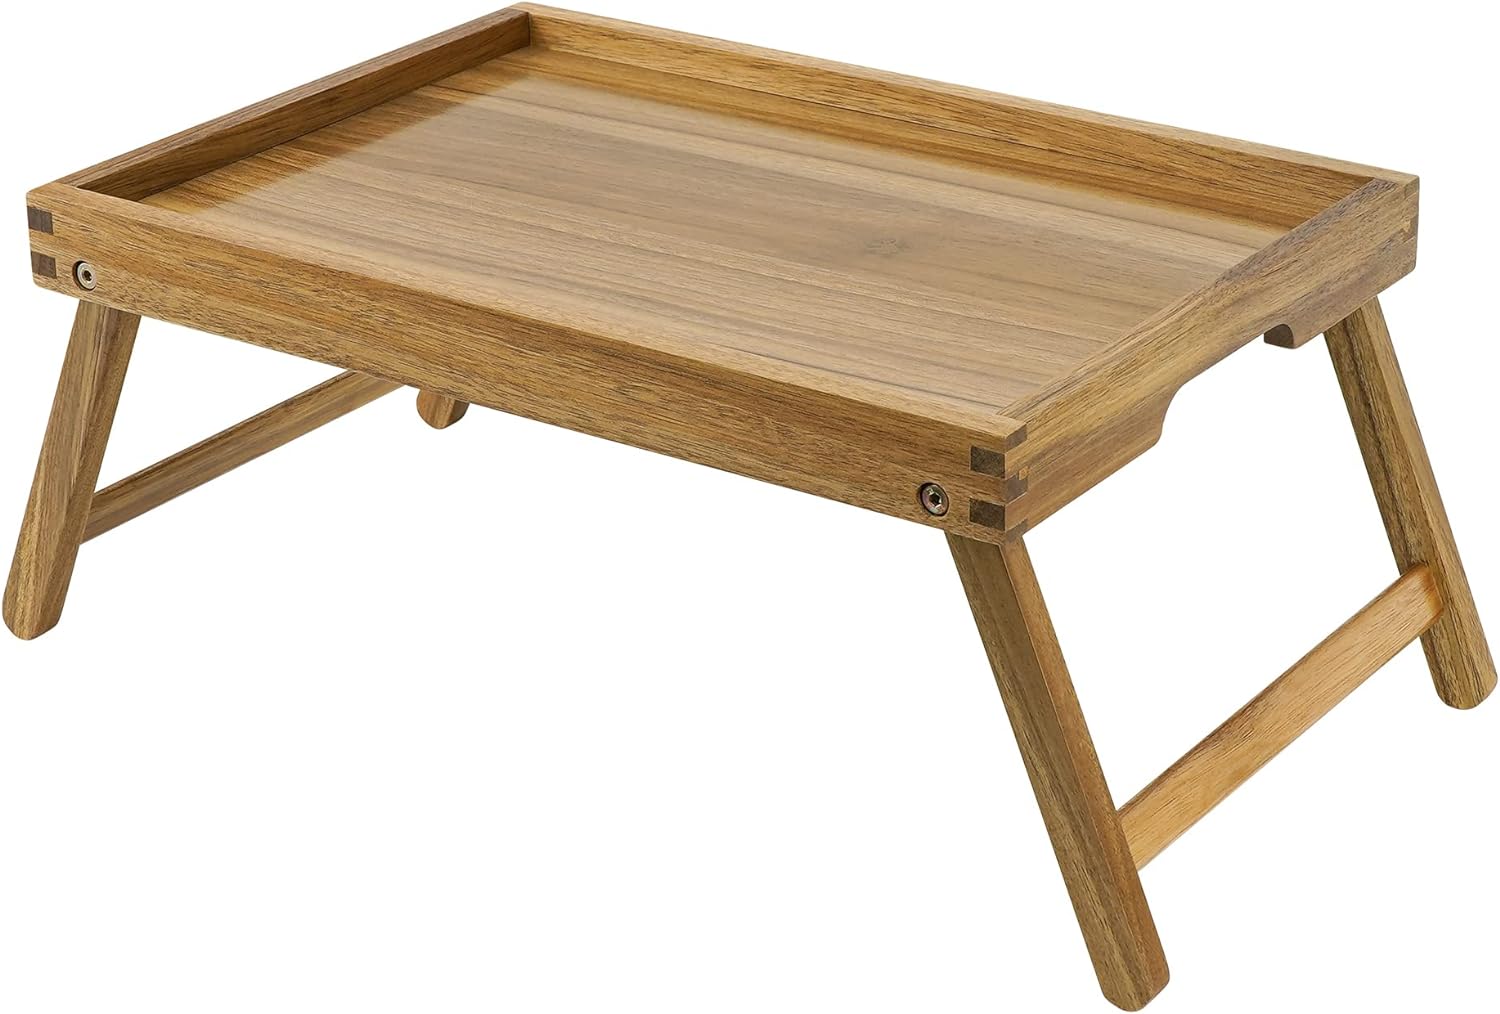 VaeFae Acacia Bed Table Tray